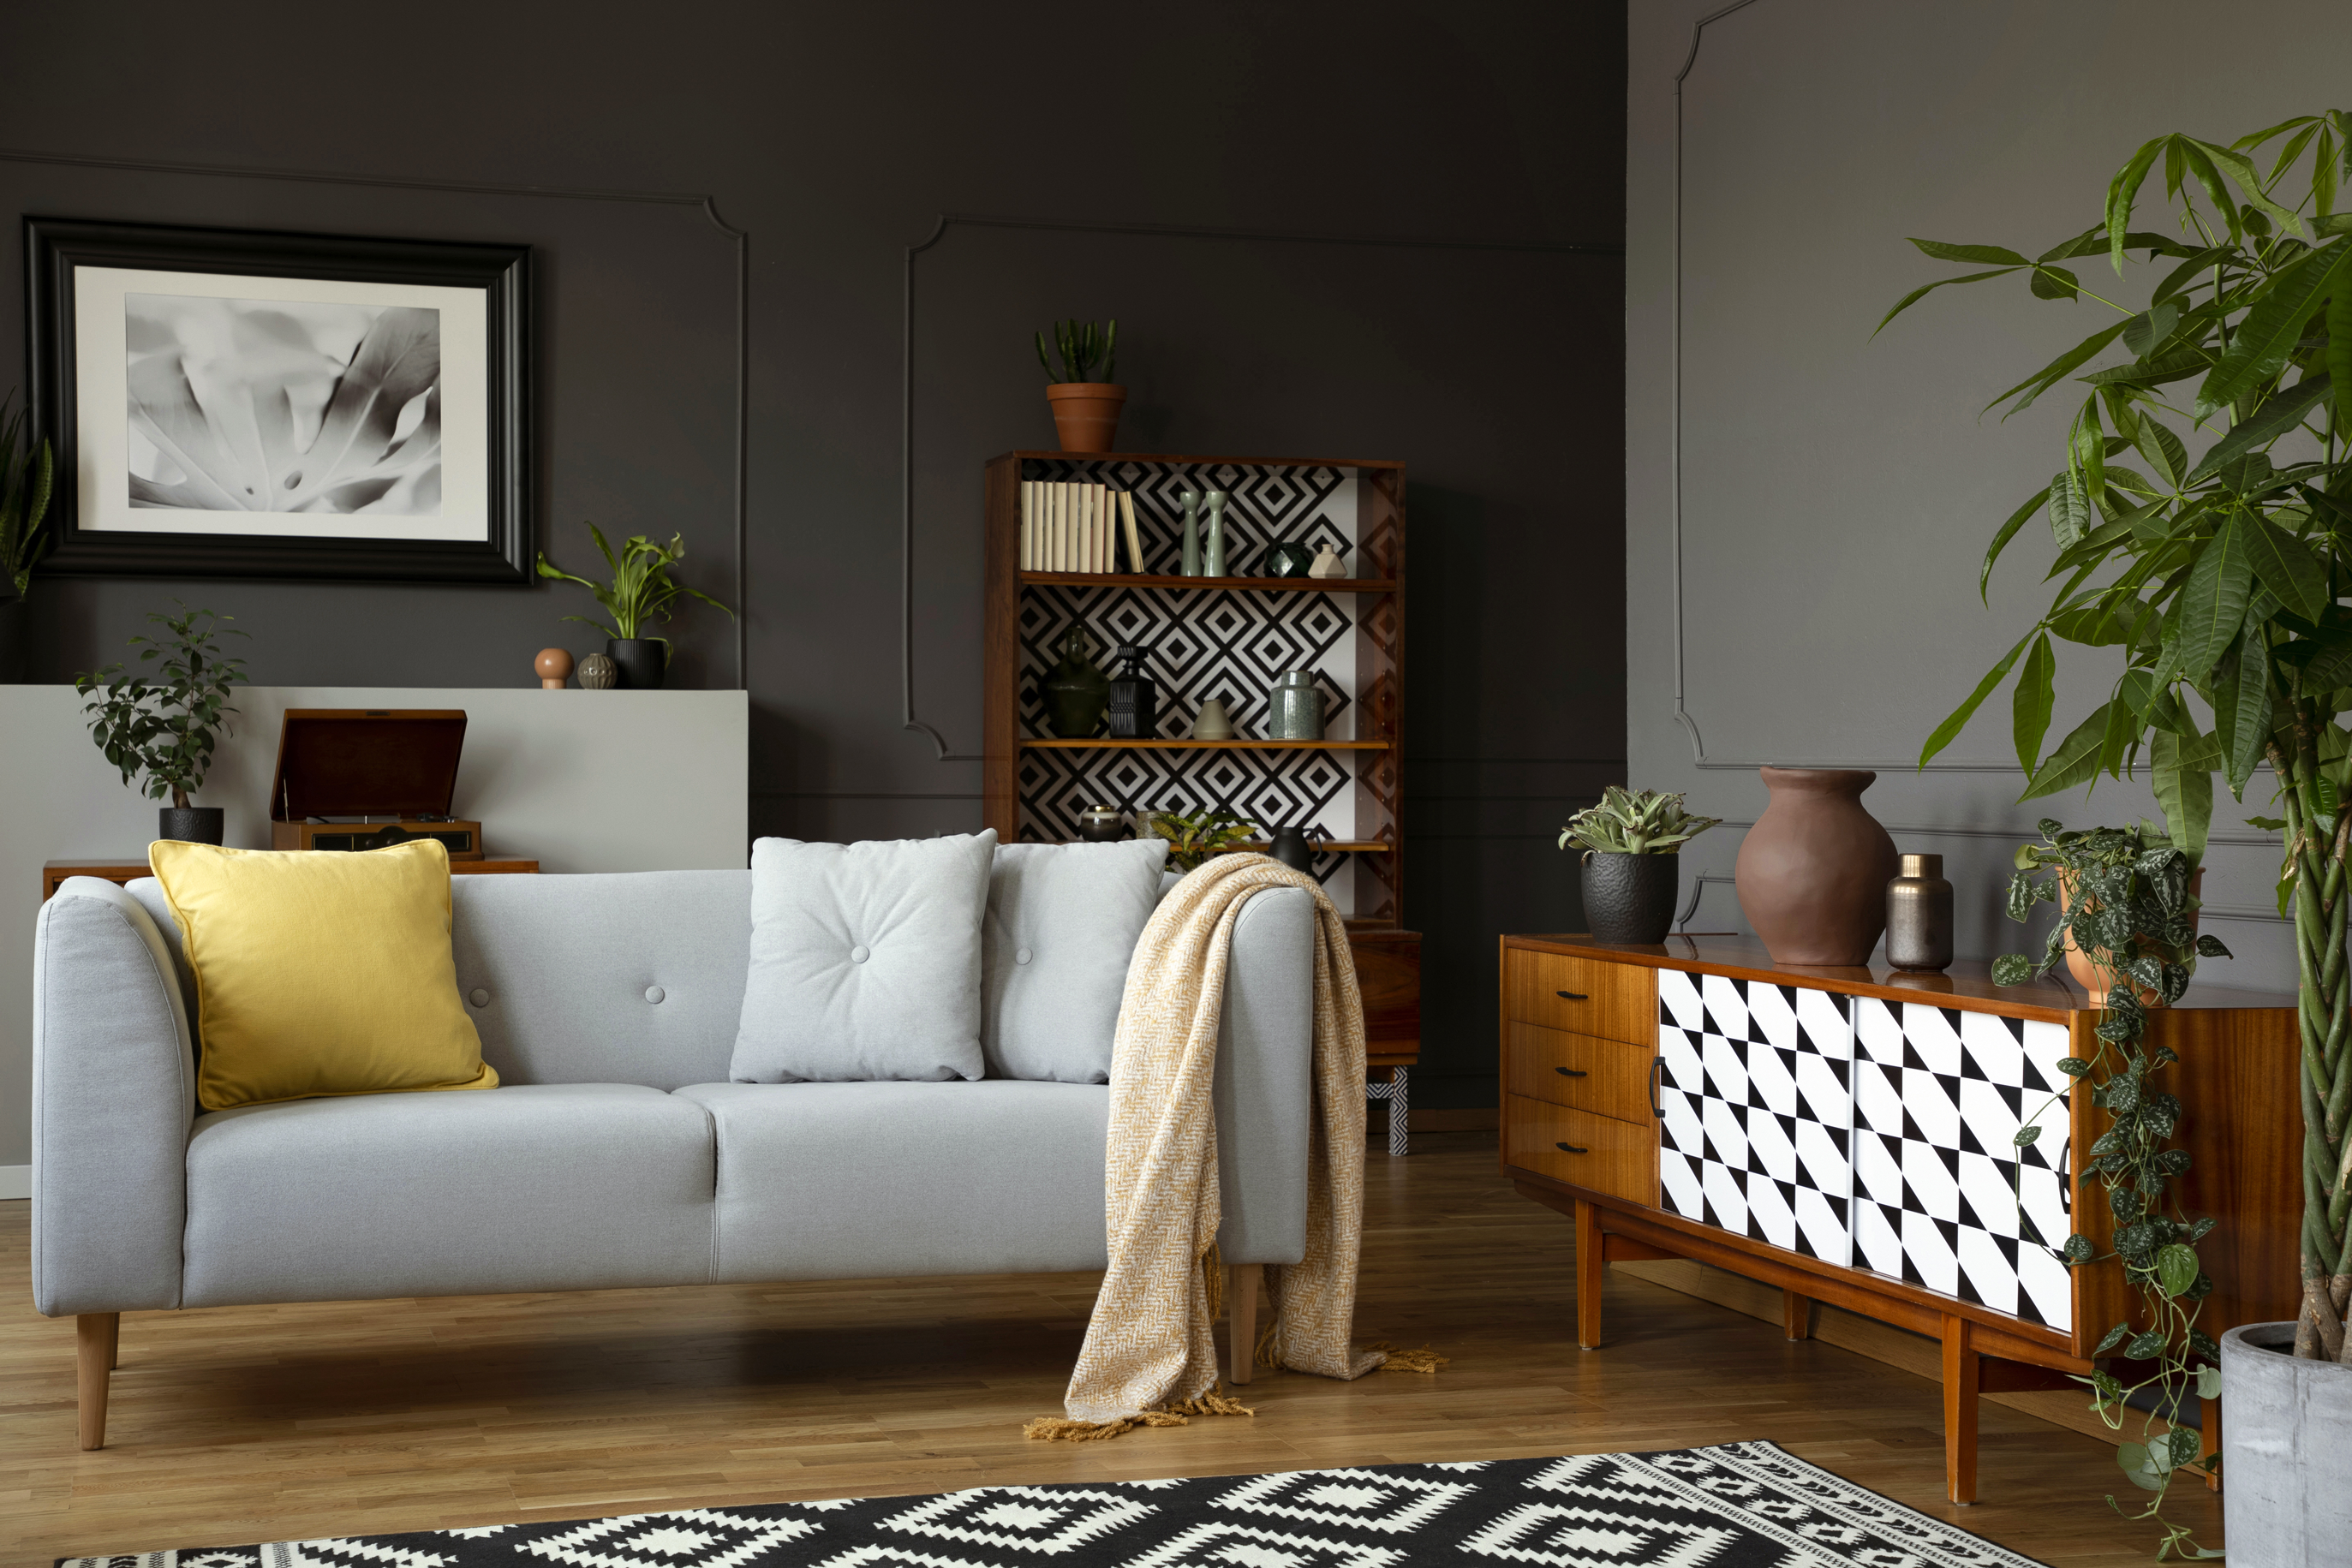 Opções de decoração: manta ou almofadas no seu sofá?